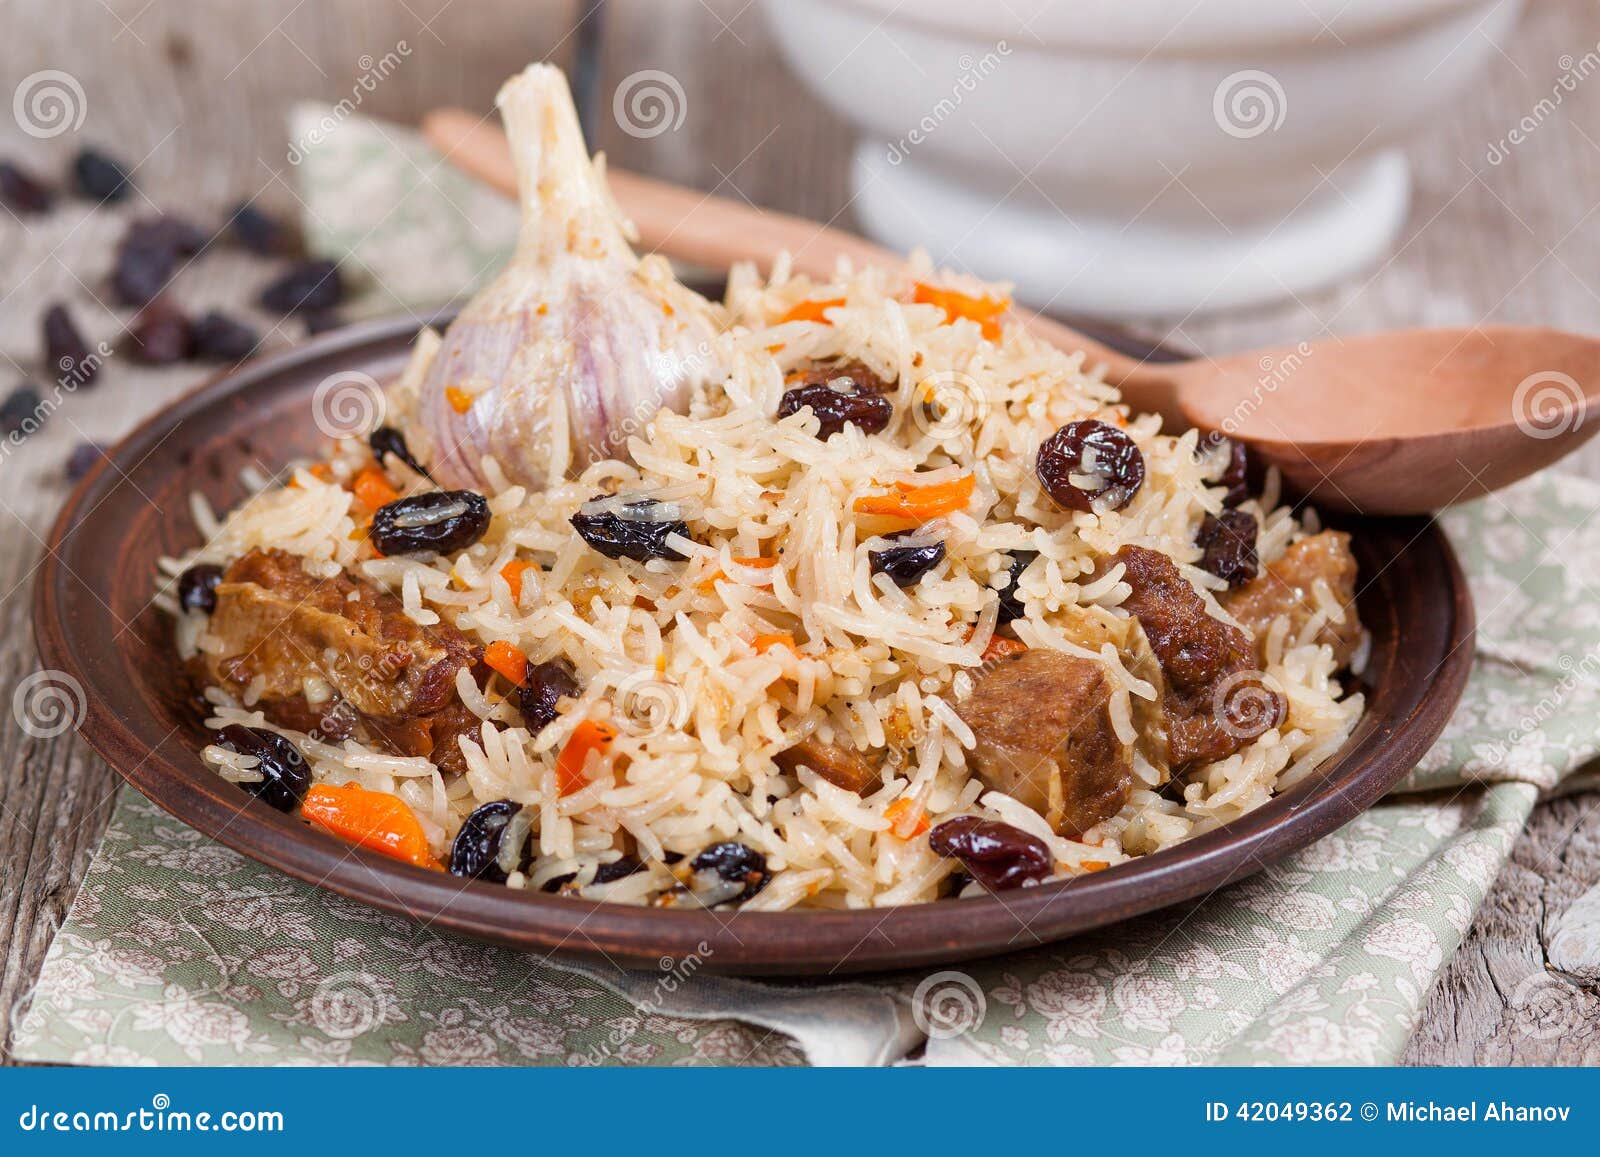 Plov, Pilaf Mit Reis, Fleisch, Rosinen Stockfoto - Bild von arabisch ...